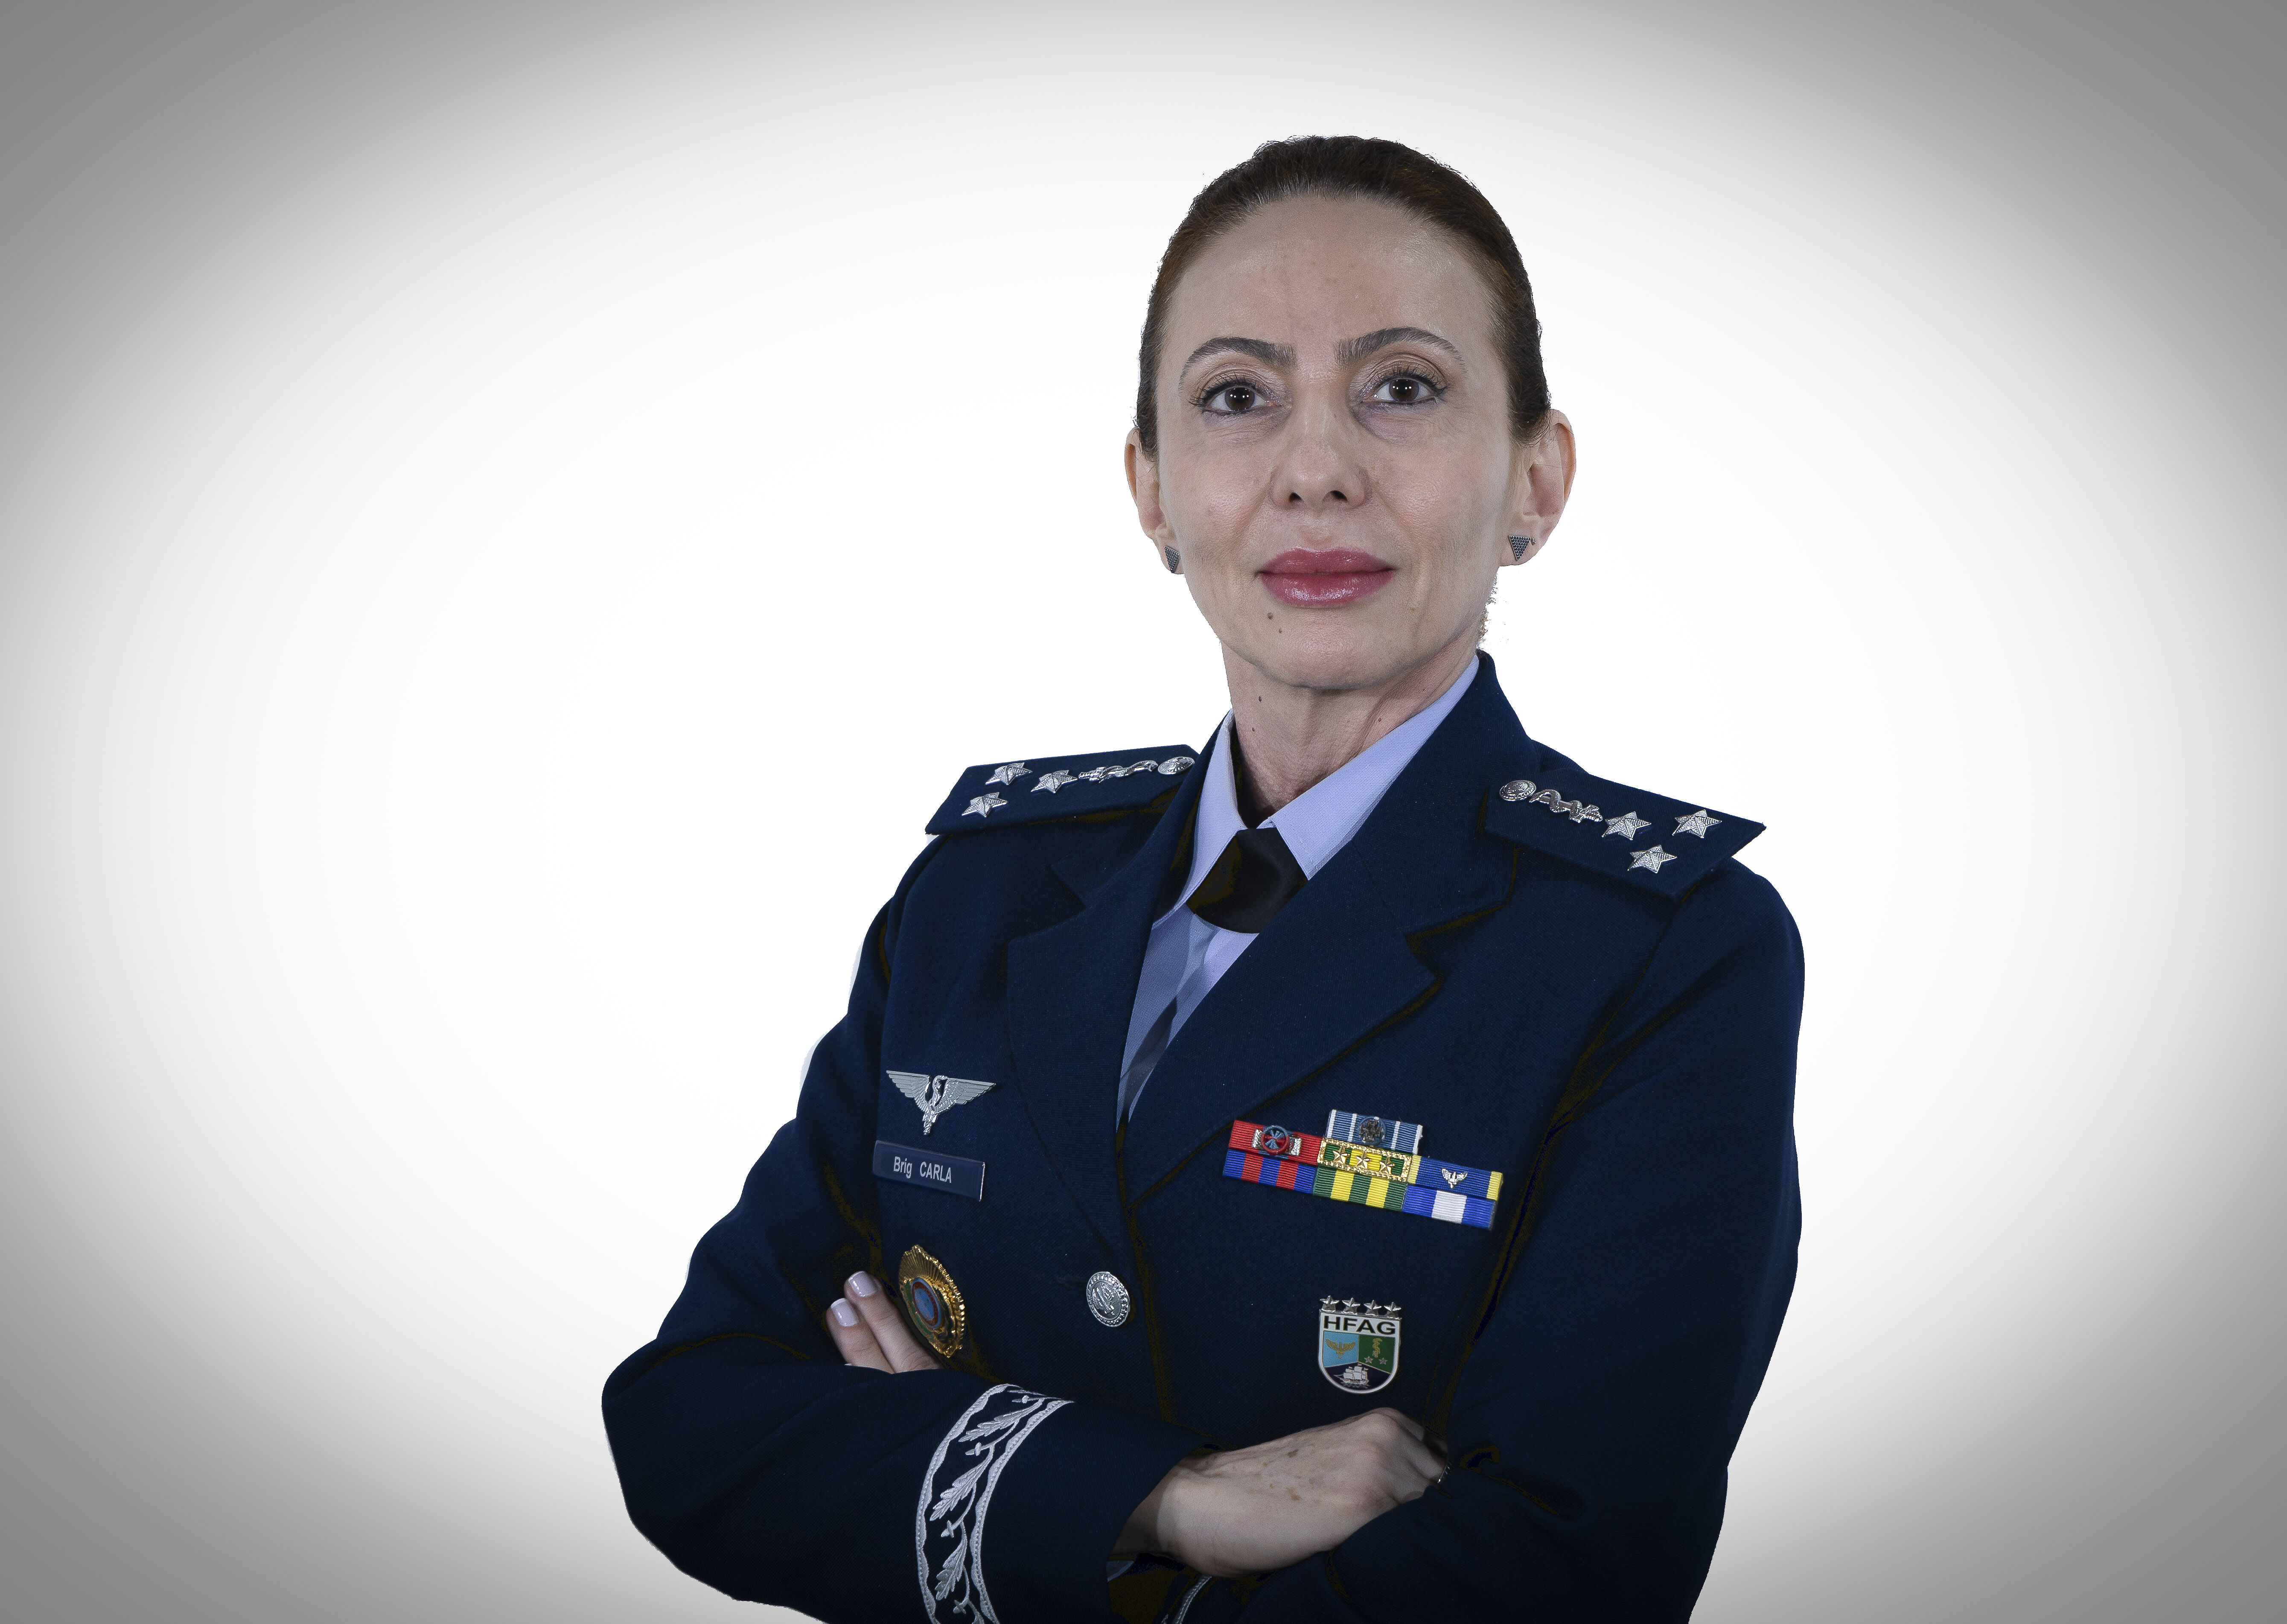 Mulheres no comando nas Forças Armadas: as histórias das duas